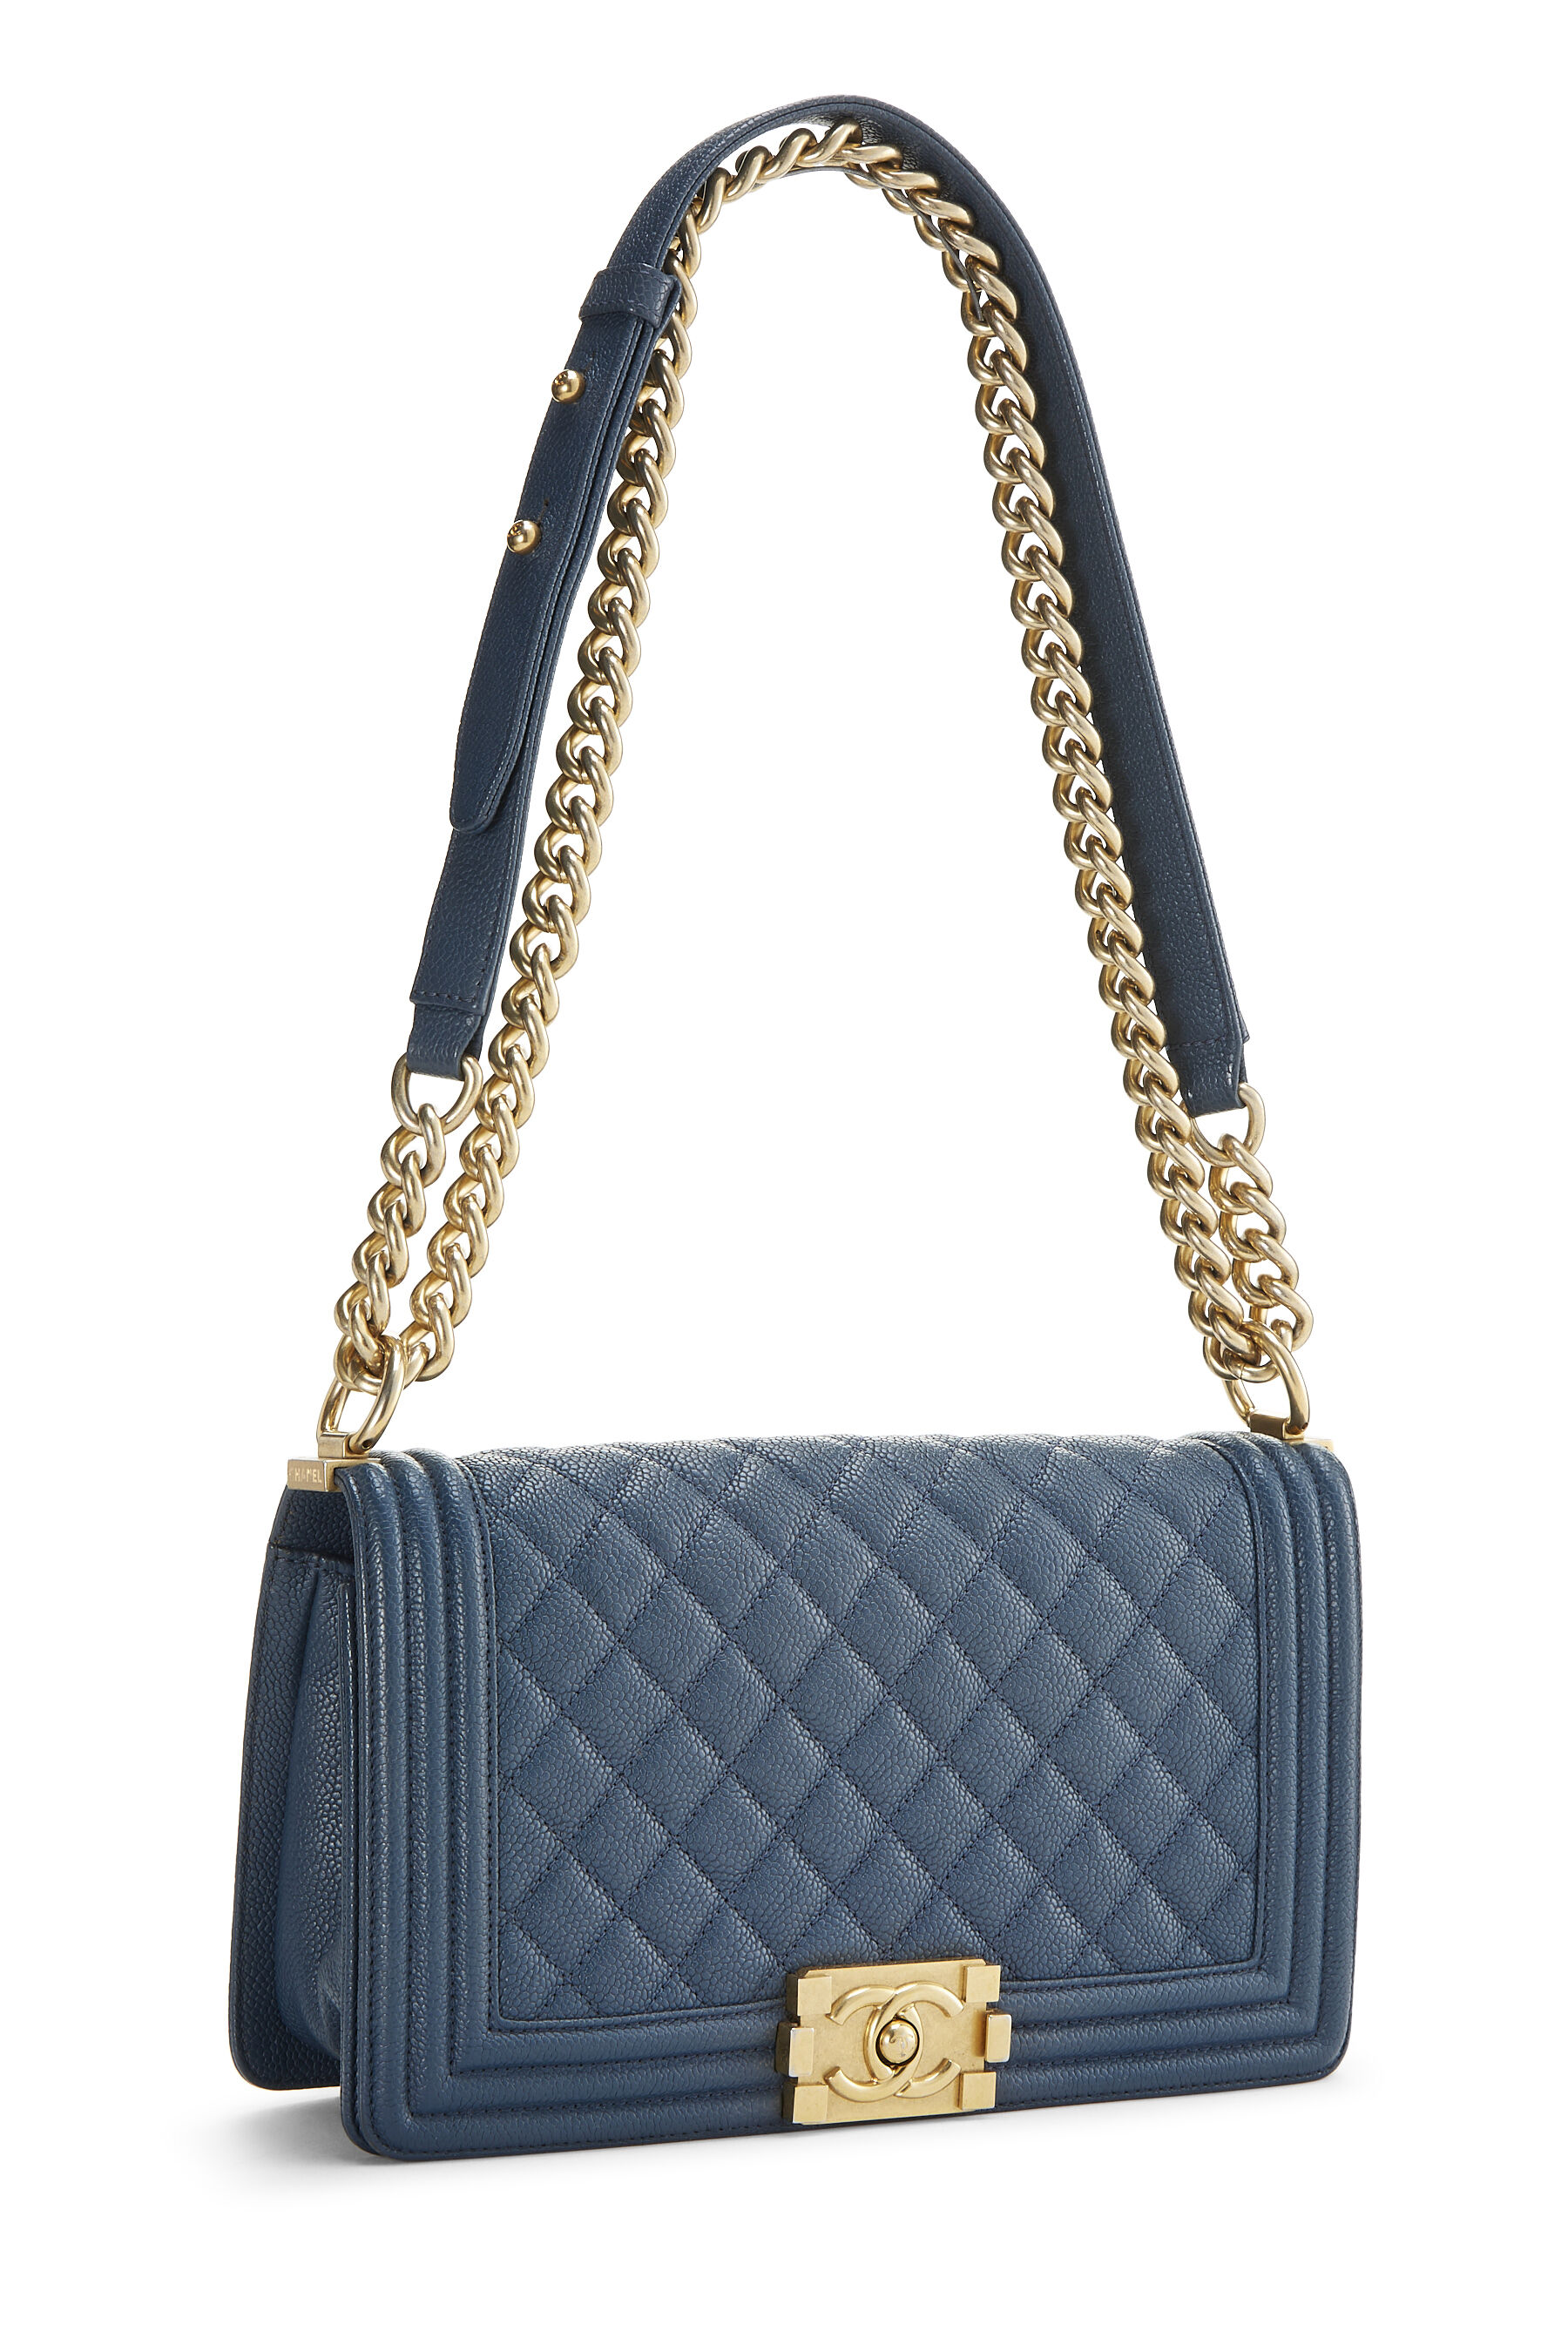 Chanel - Blue Quilted Caviar Boy Bag Medium